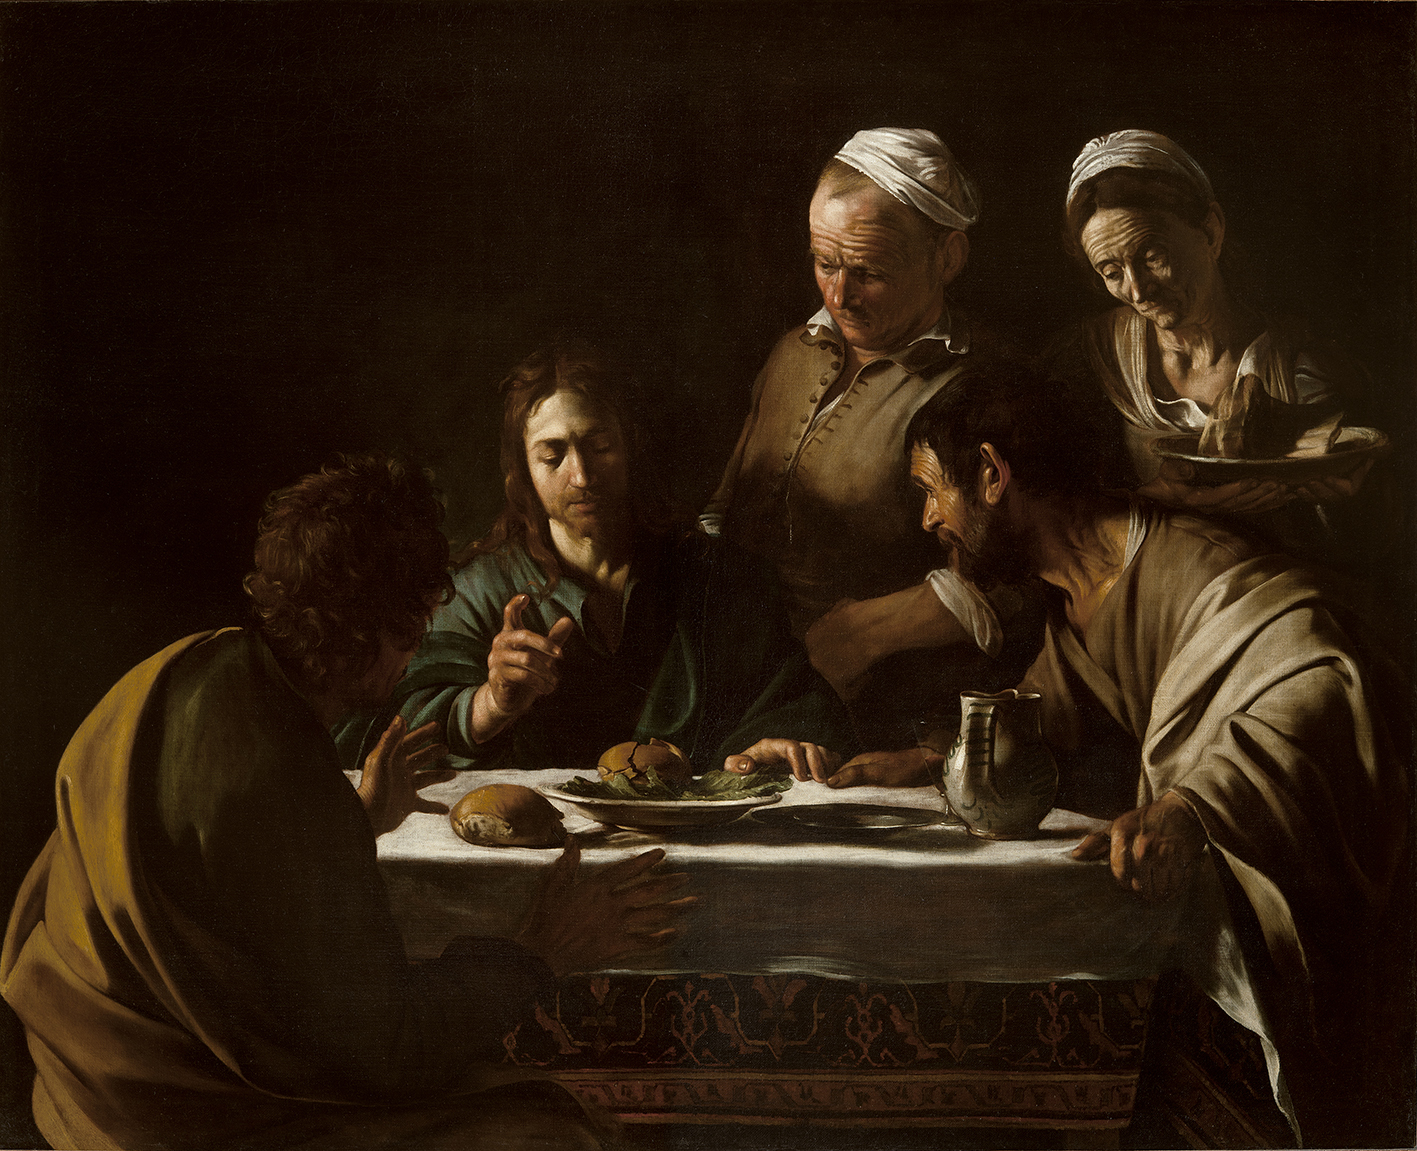 カラヴァッジョ 《エマオの晩餐》 1606年 ミラノ、ブレラ絵画館 Photo courtesy of Pinacoteca di Brera, Milan